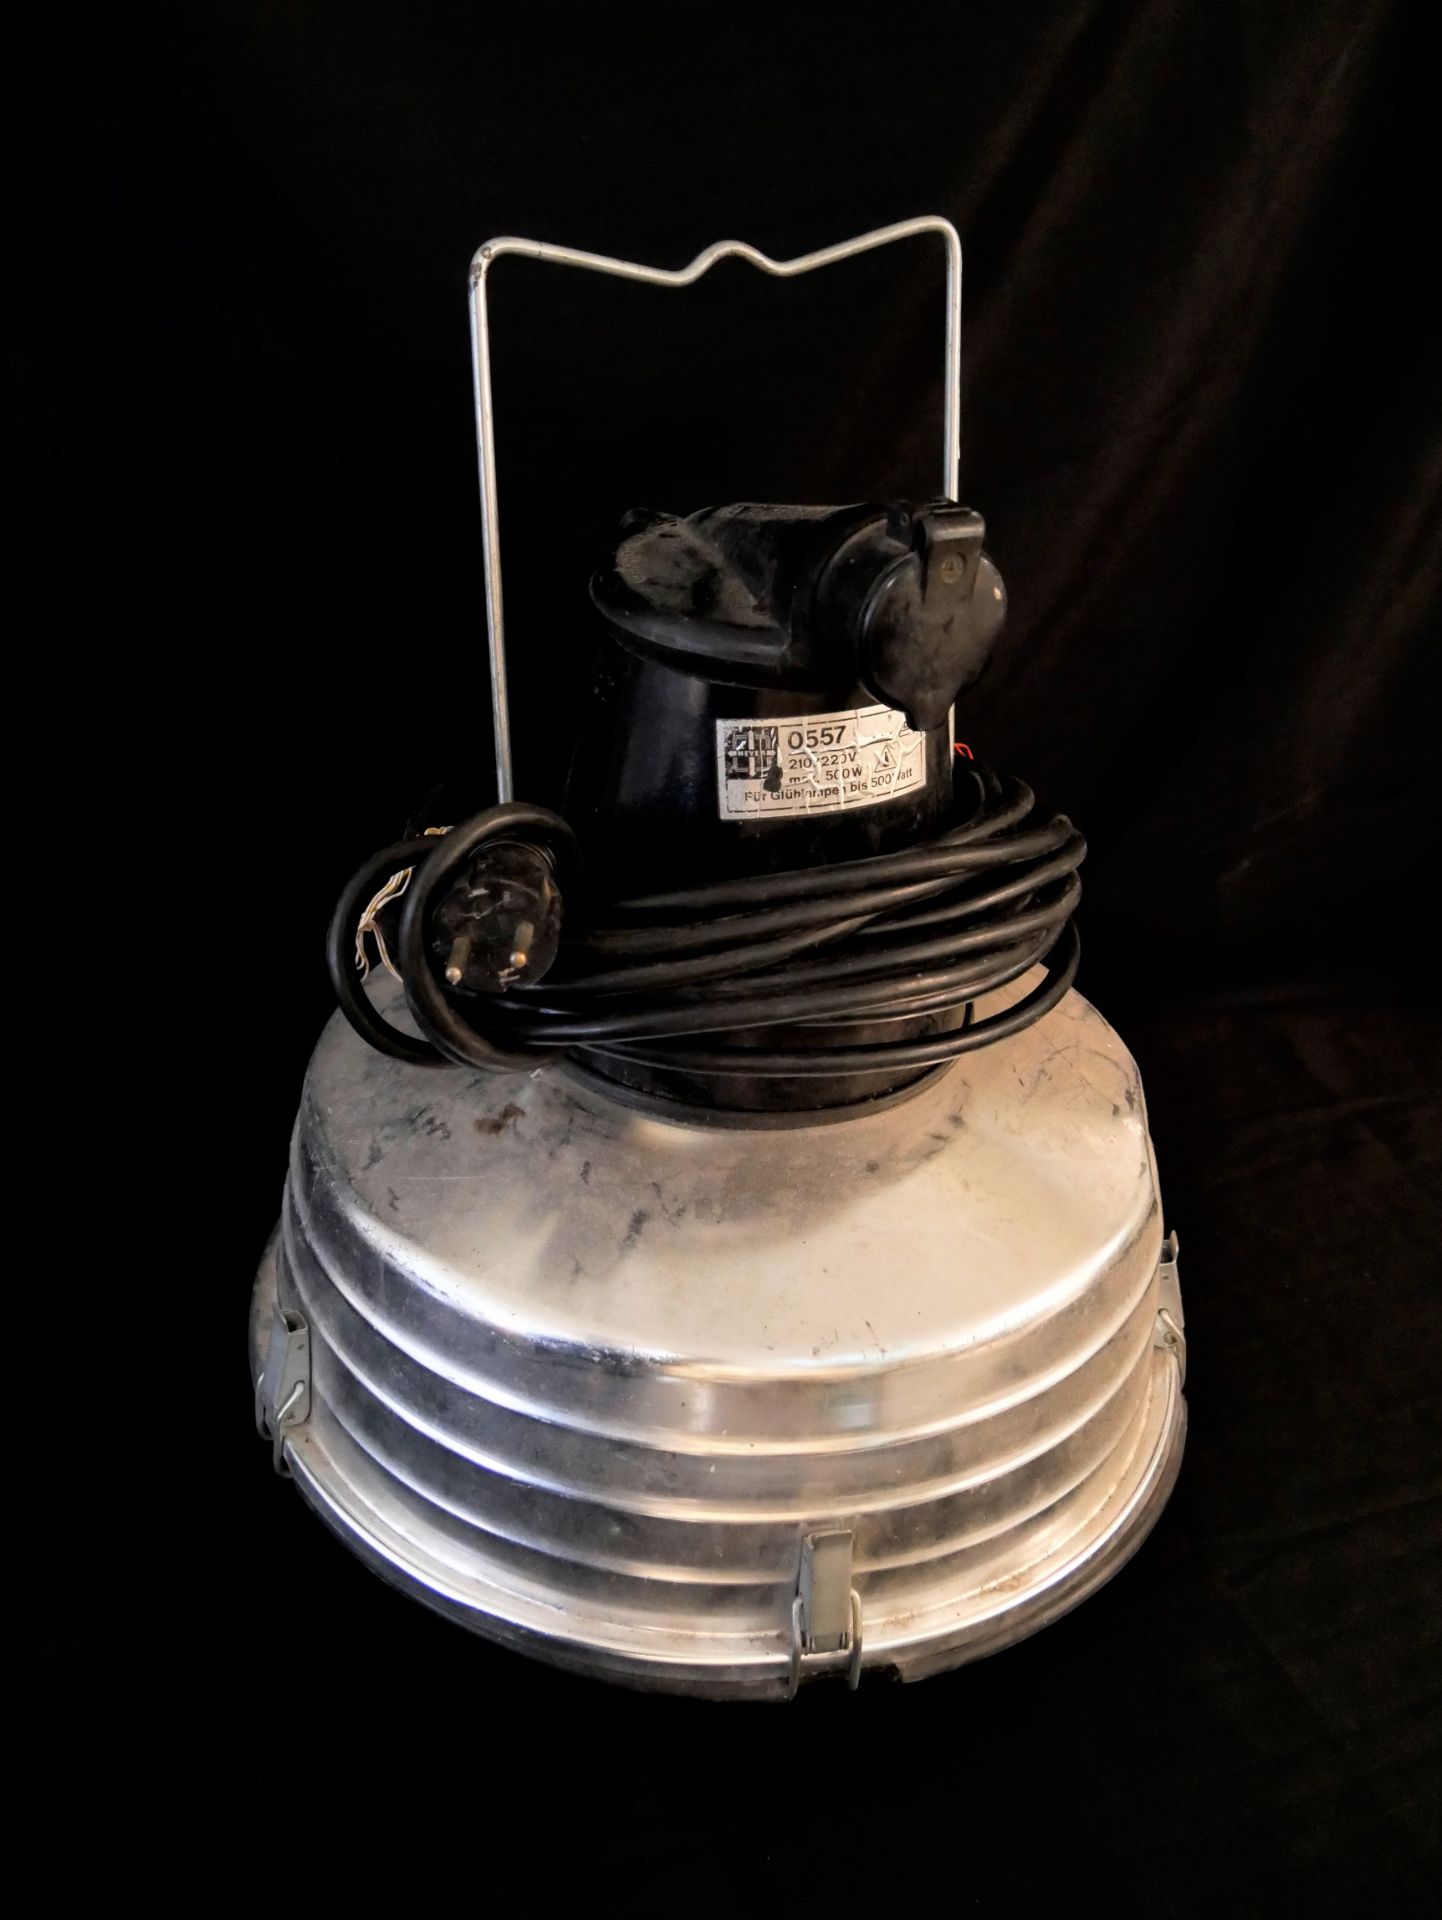 Meyer Lampe, Modell 0557, 210/220 W. Zulässige Belastung, max 10 A Gleichstrom, 16 A Wechselstrom.